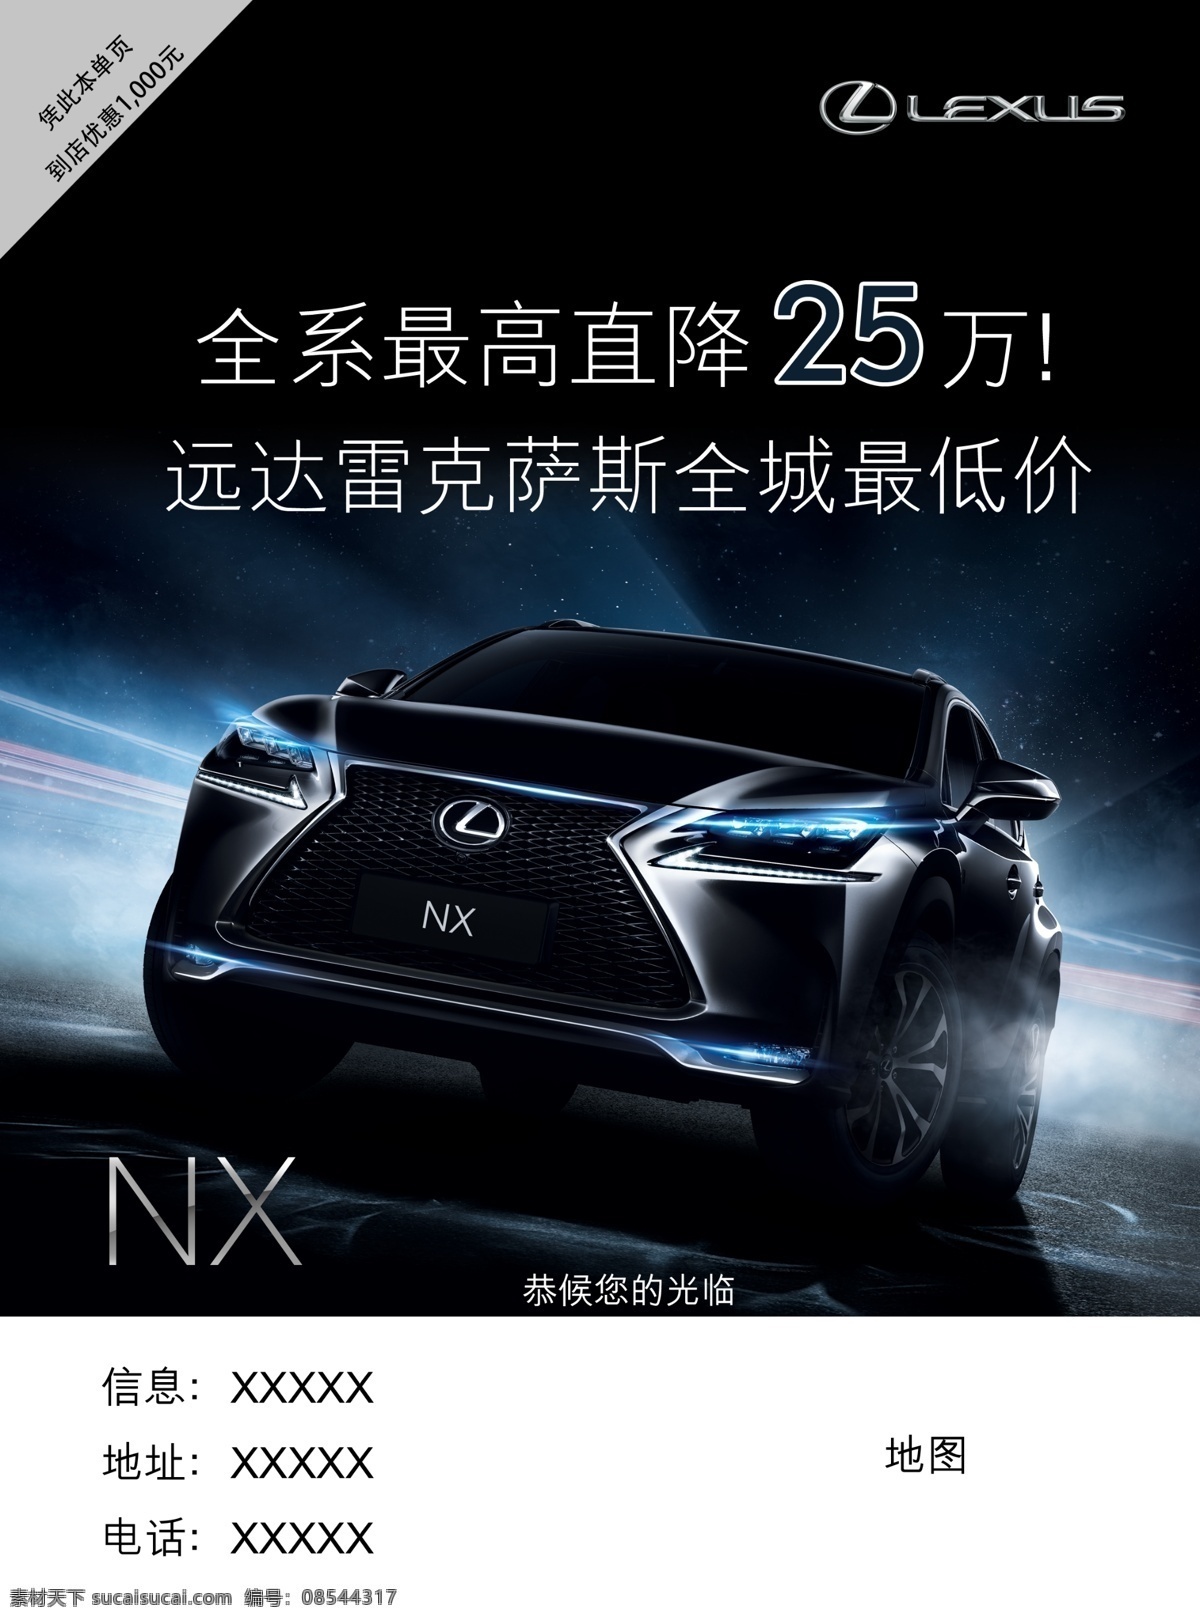 雷克 萨斯 宣传单 雷克萨斯 dm单 nx 雷克萨斯nx lexus 汽车专辑 dm宣传单